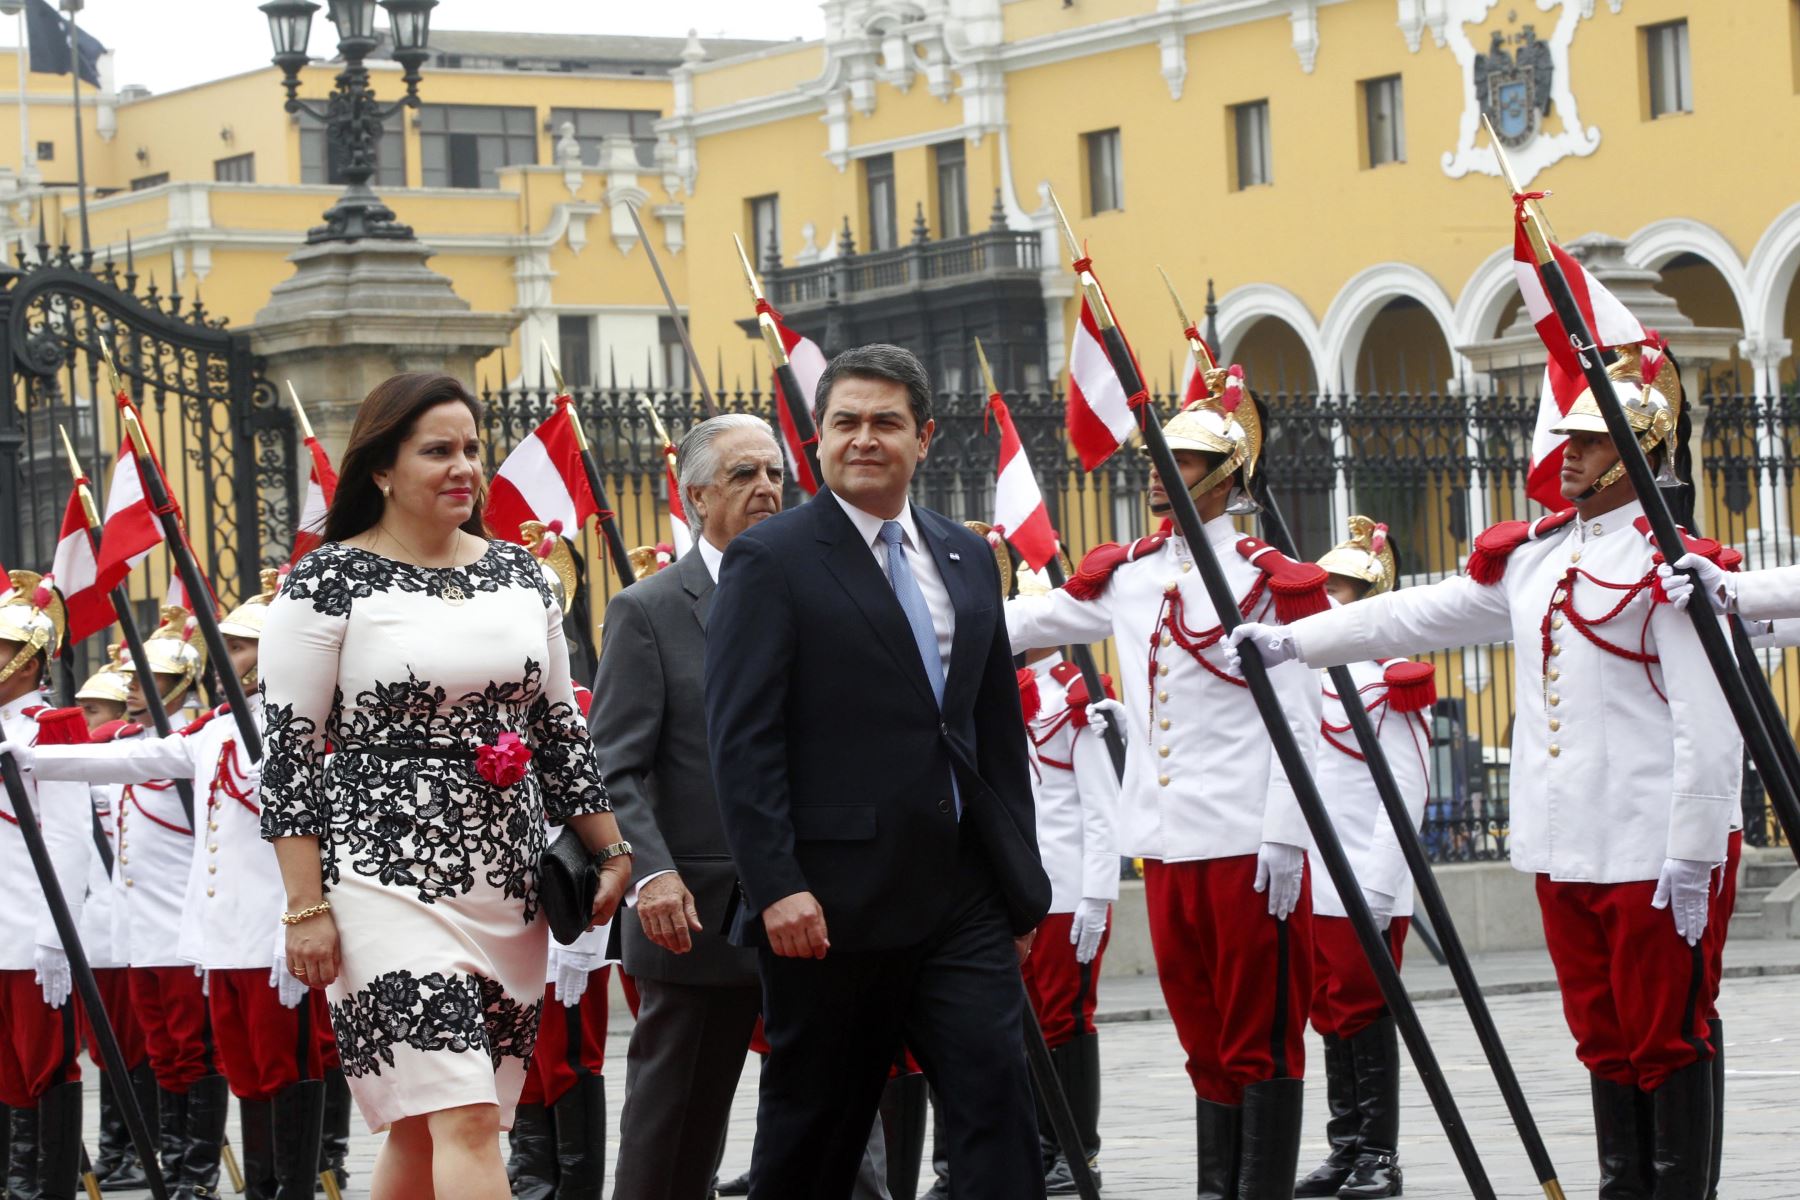 LIMA,PERU MAYO 29. Presidente Ollanta Humala recibió la visita oficial de su homólogo de Honduras, Juan Orlando Hernández, en Palacio de Gobierno.
Foto: ANDINA/Jhony Laurente